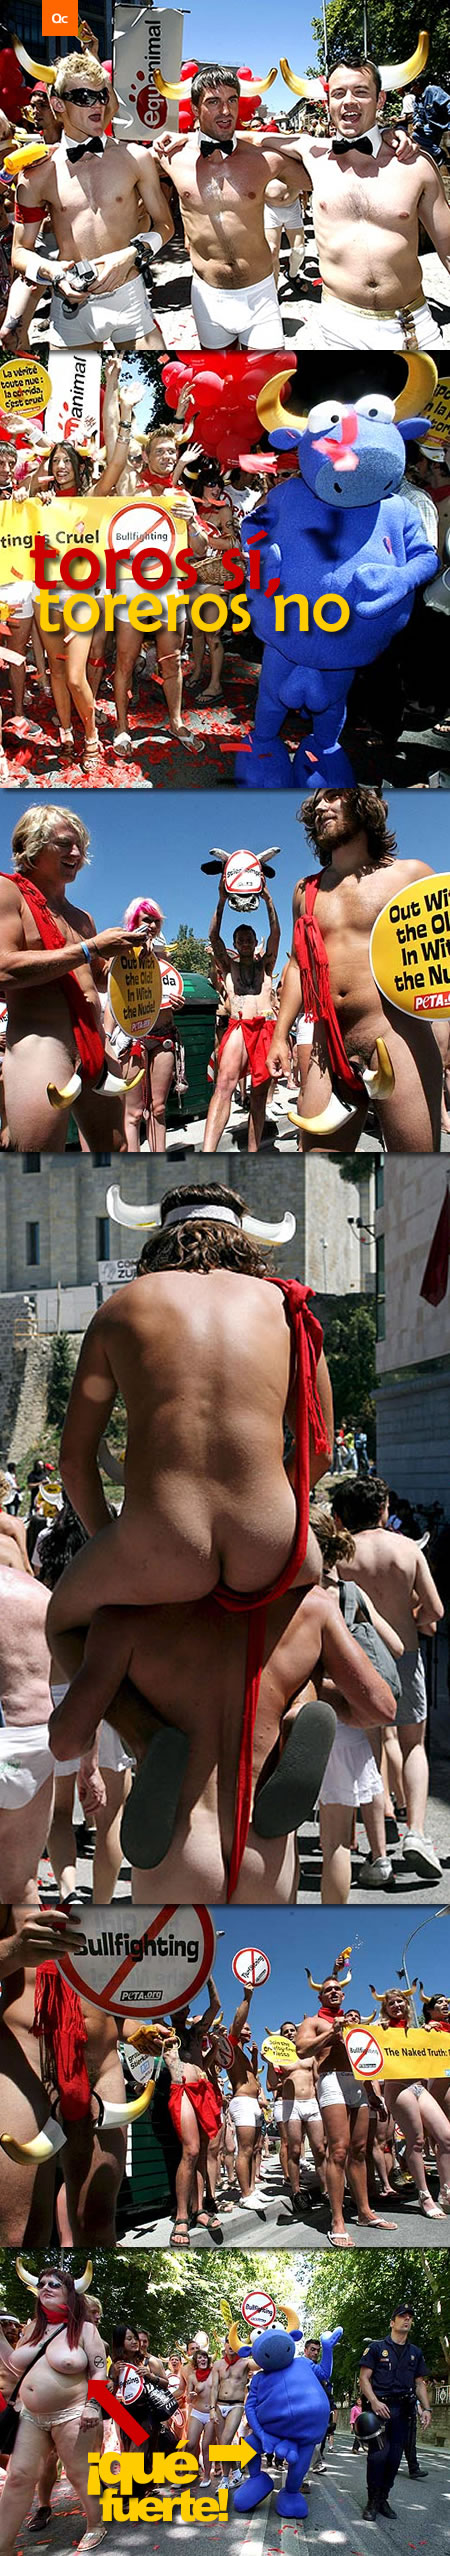 Desnudos contra los sanfermines 2007